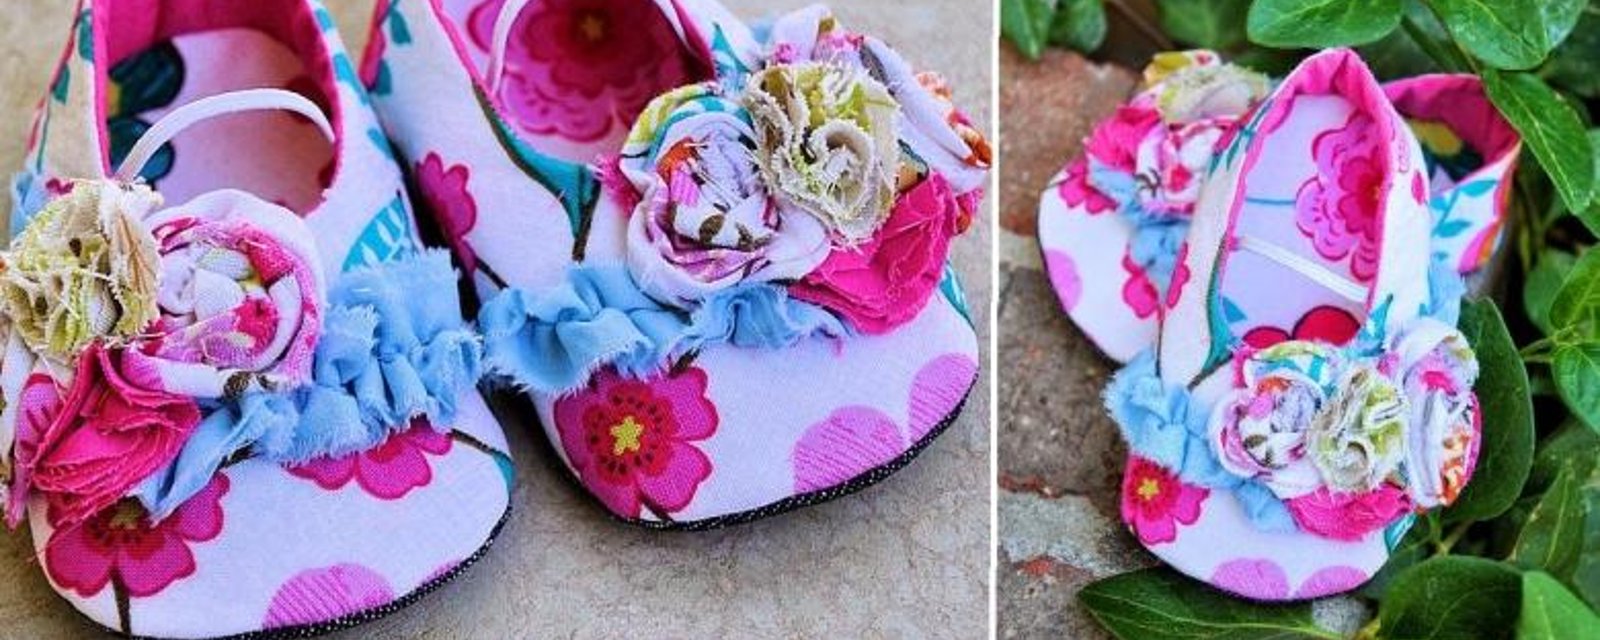 Un patron gratuit pour fabriquer d'adorables chaussures pour bébé! 